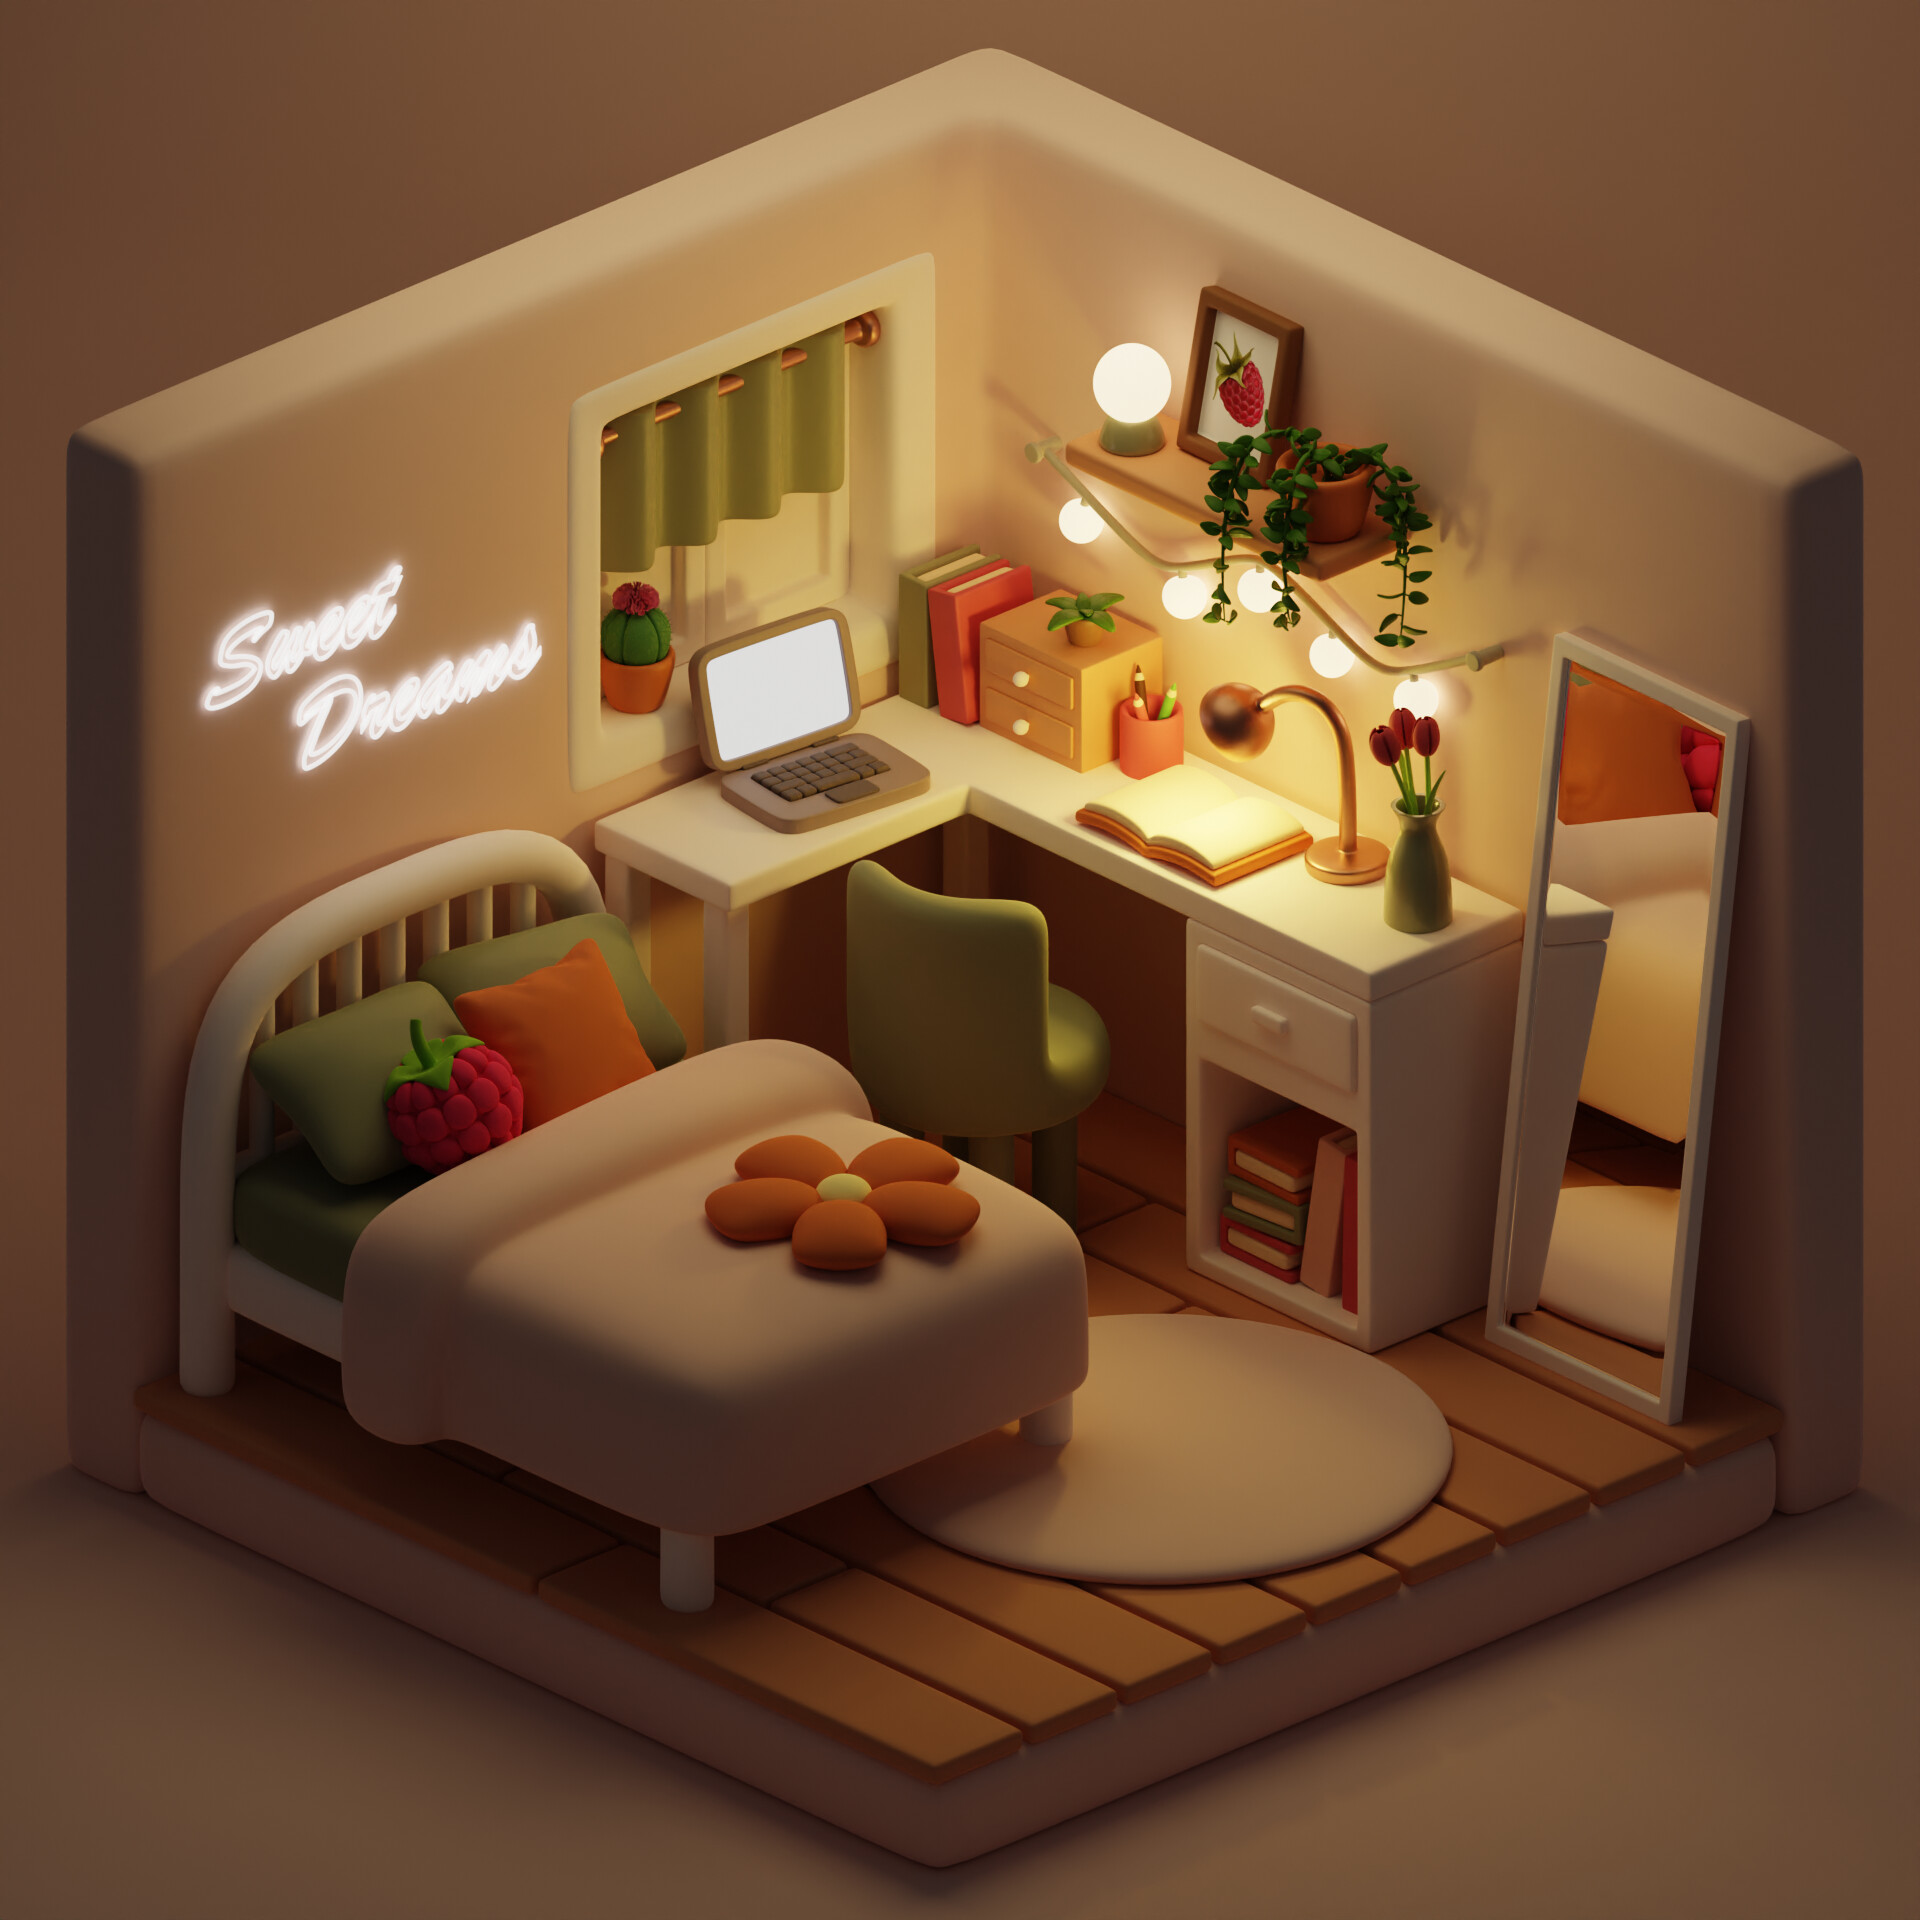 ArtStation - Isometric Bedroom: Daytime/Nighttime Scene